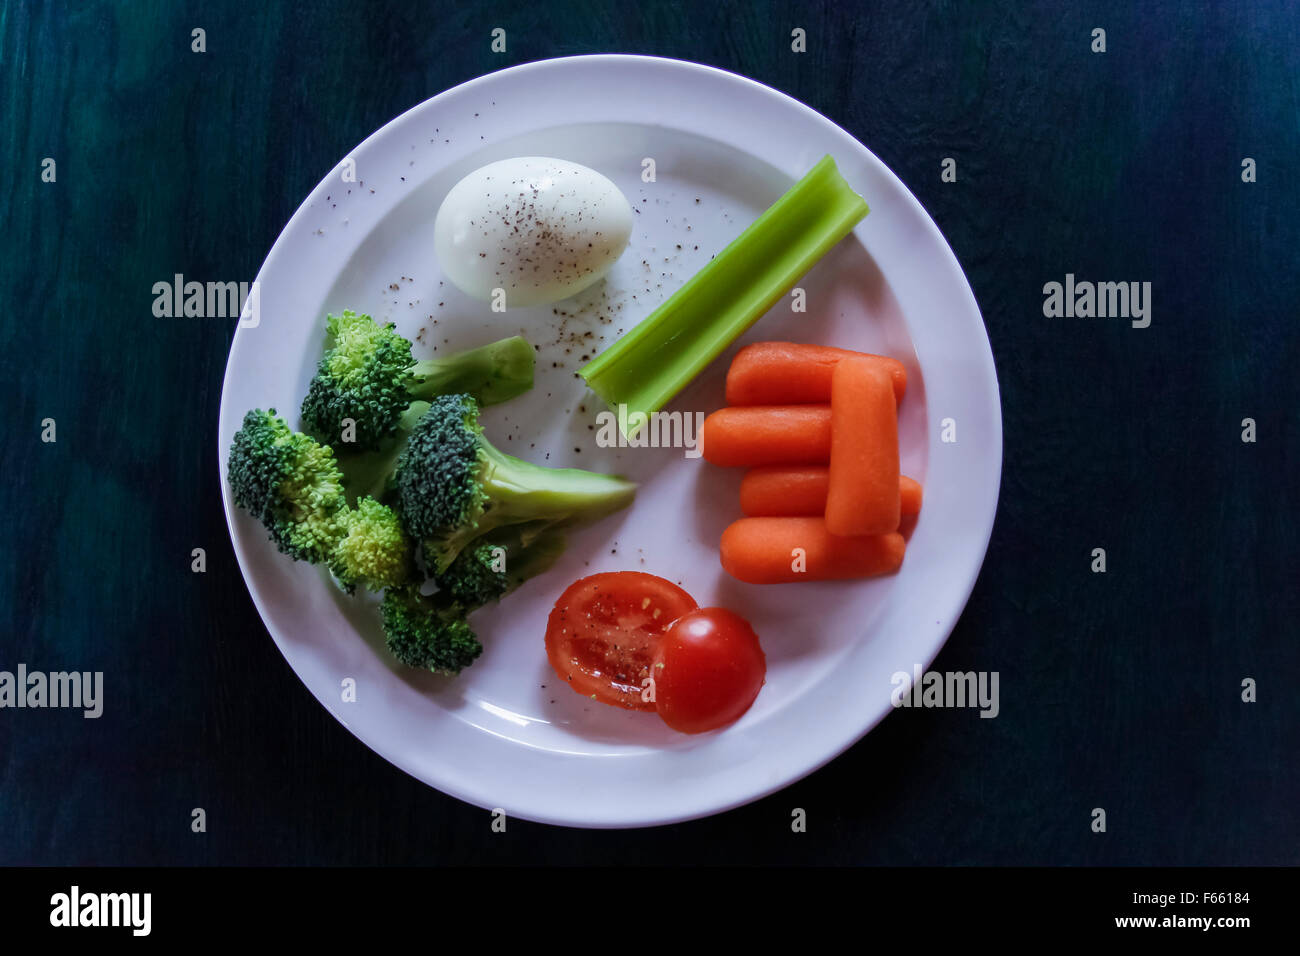 Frischen Brokkoli auf ein bläuliches grün Hintergrund mit anderen gesunden Zutaten. low-key Beleuchtung, Overhead Sicht Stockfoto